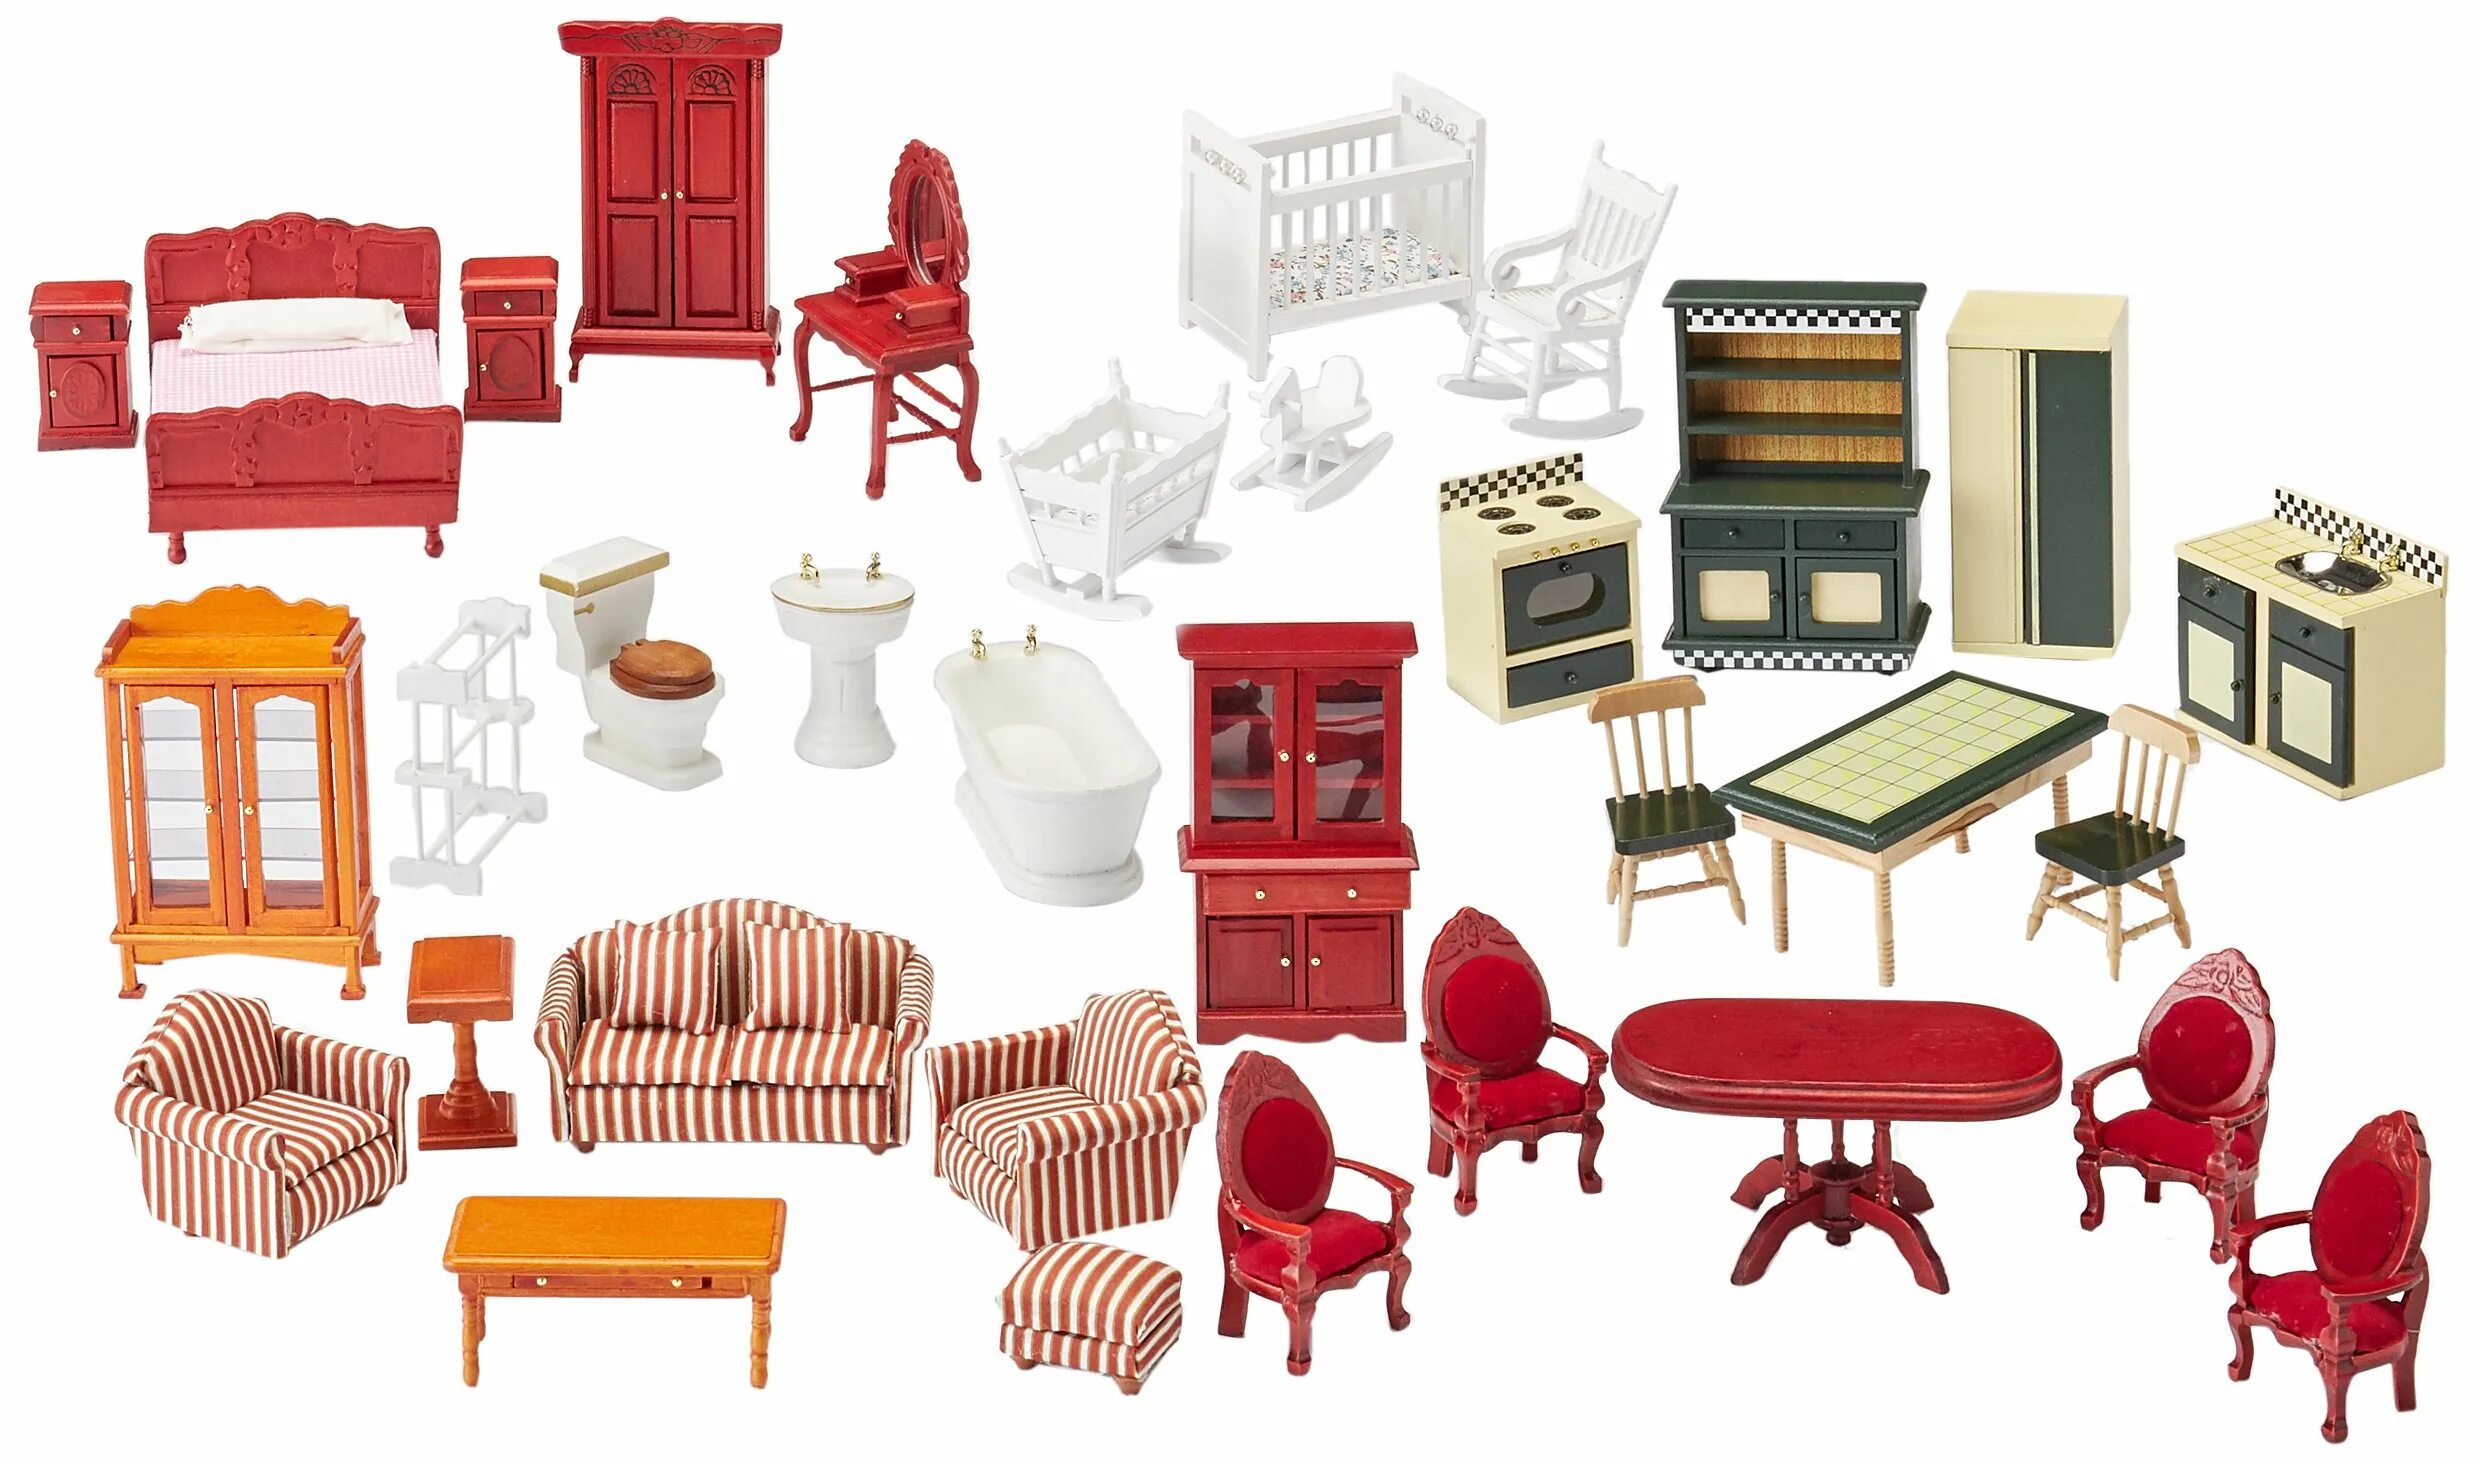 Мебель для бумажного домика. MINIHOMEDECOR кукольная мебель. Мебель для кукол арт 1908u288. Домик с мебелью. Набор деревянной мебели для кукольного домика.